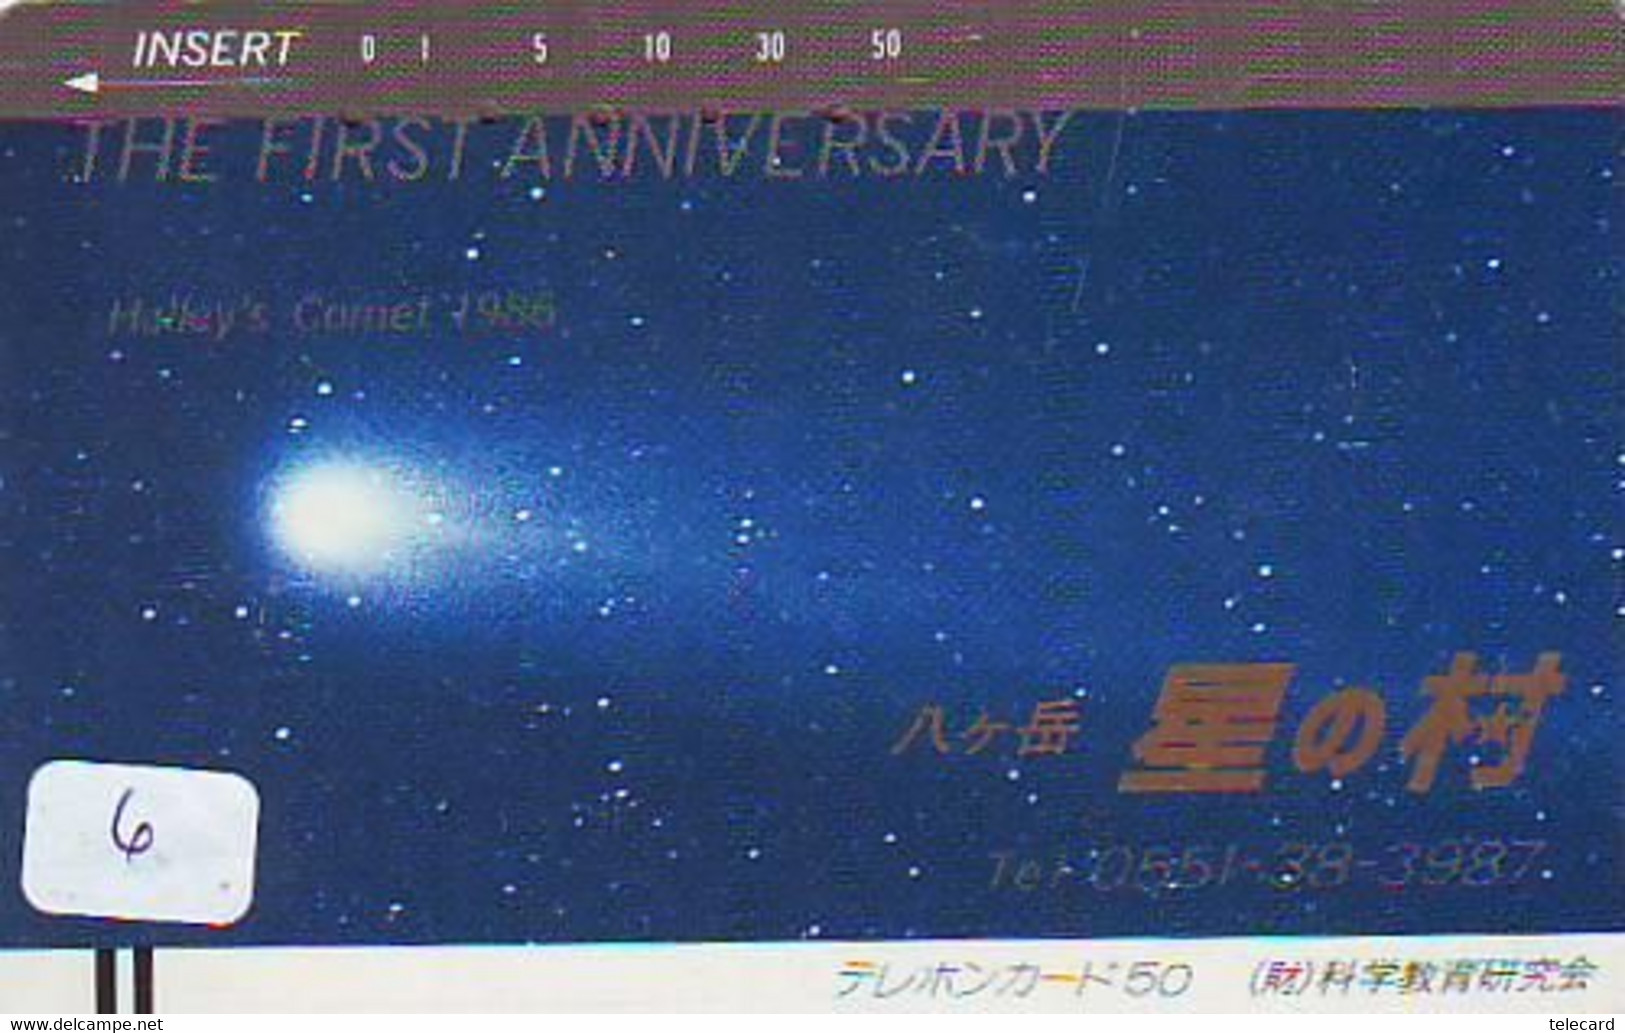 Télécarte COMET (6) COMETE-Japan SPACE * Espace * WELTRAUM *UNIVERSE* PLANET* BALKEN* 110-15535 - Astronomie